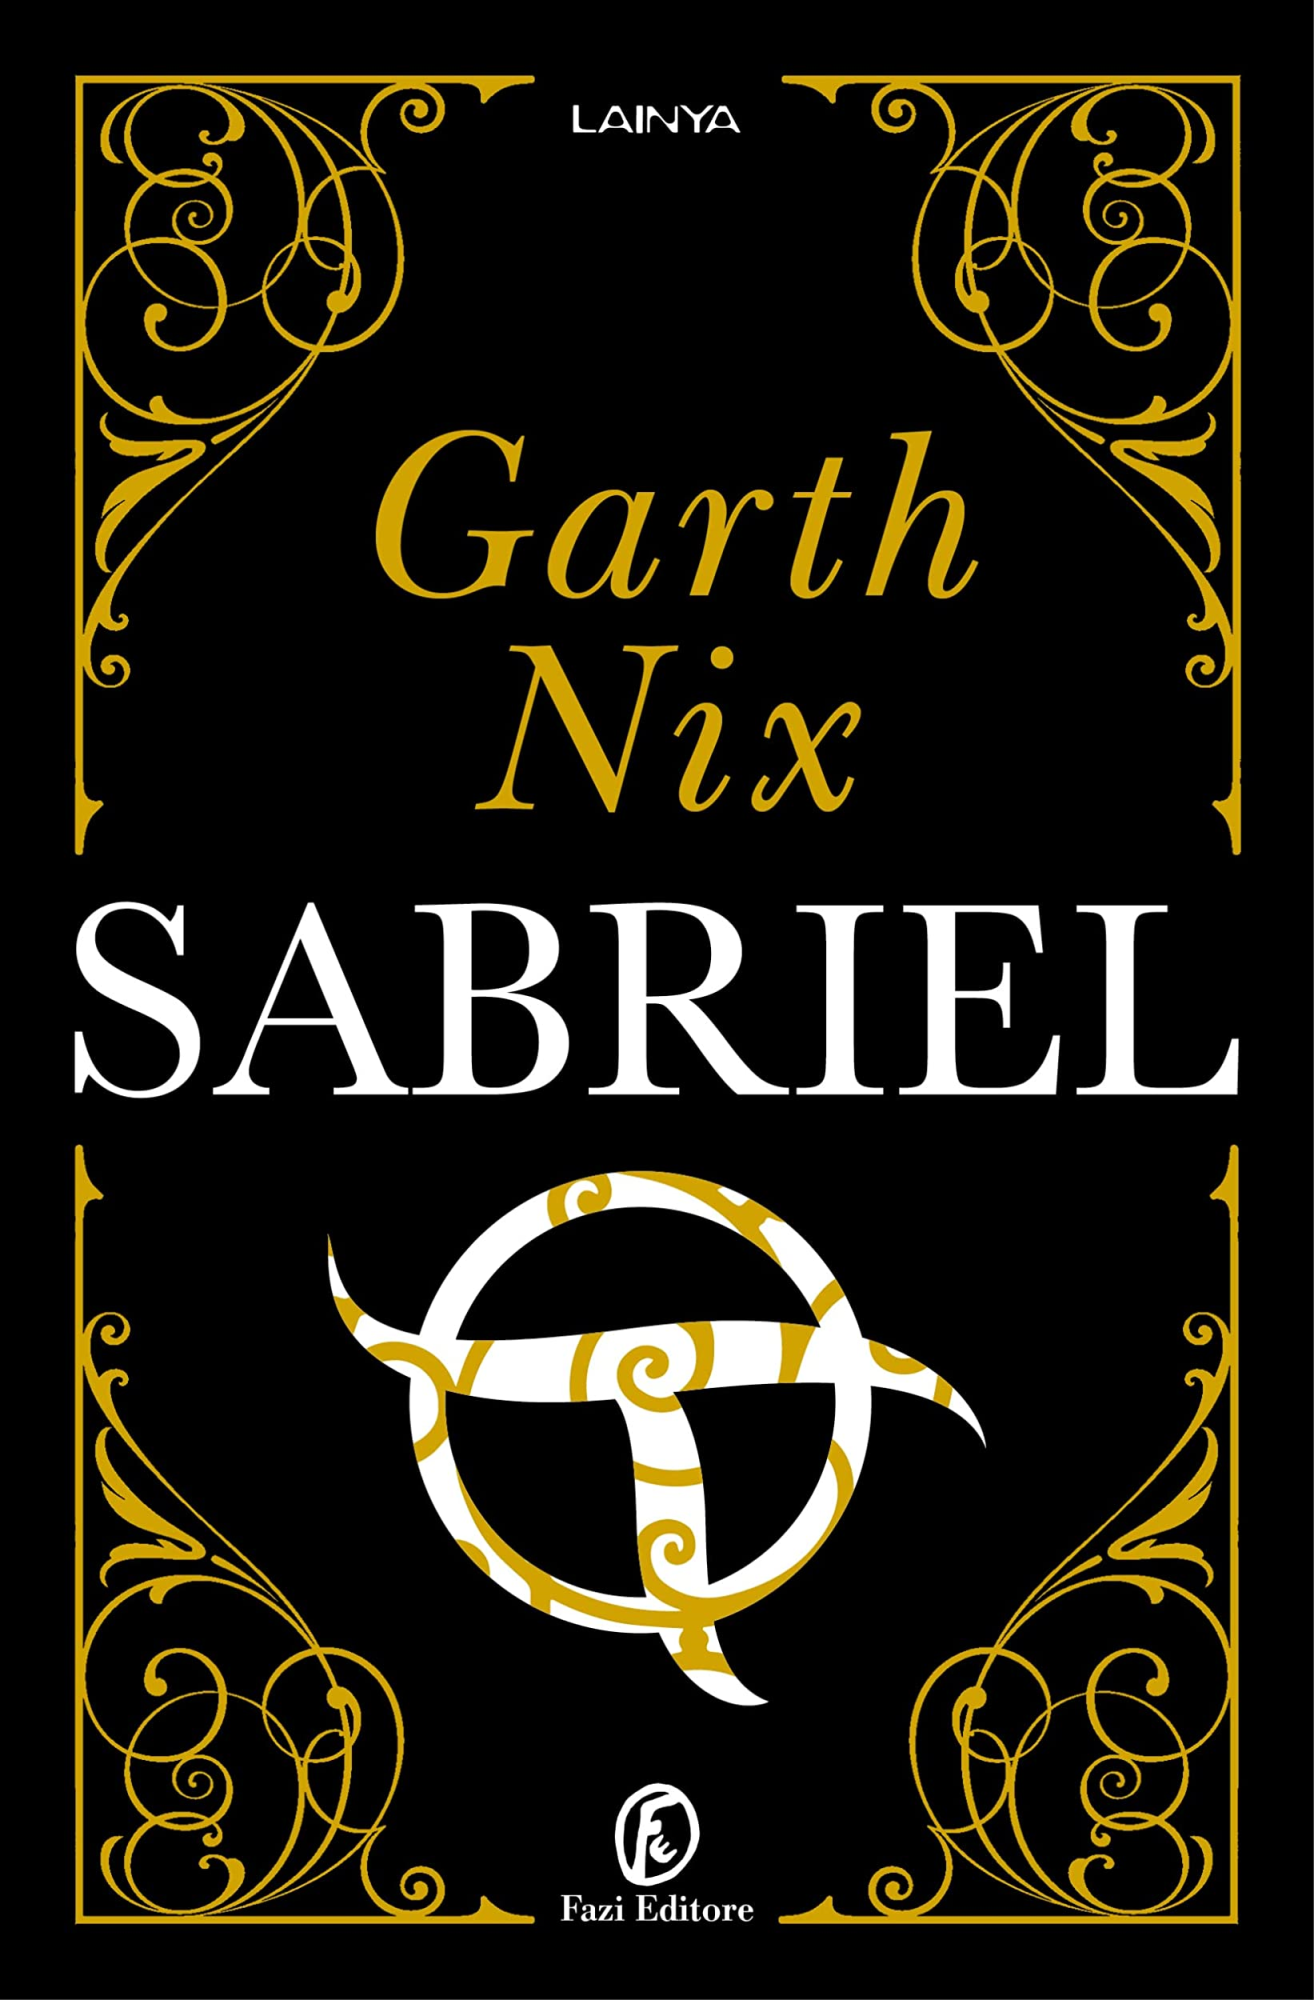 Libri Garth Nix - Sabriel NUOVO SIGILLATO, EDIZIONE DEL 05/05/2022 SUBITO DISPONIBILE